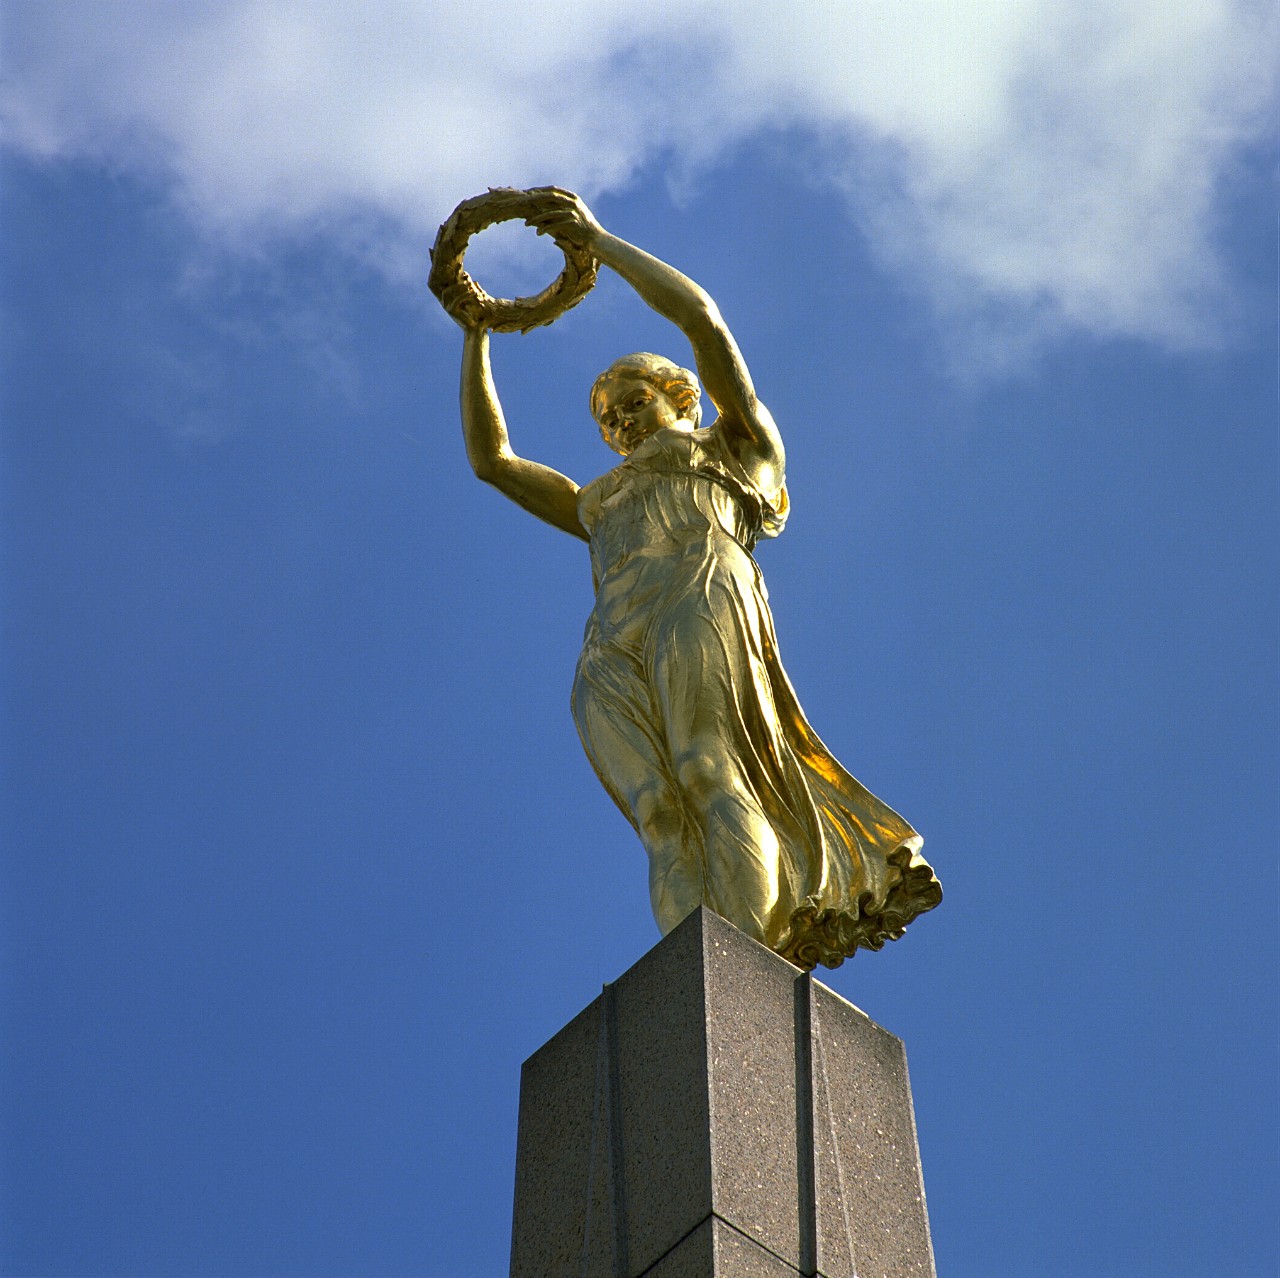 Le Monument du Souvenir “Gëlle Fra” (femme dorée), inauguré en 1923 sur la Place de la Constitution, fut dressé à la mémoire des soldats luxembourgeois morts lors de la Première Guerre mondiale